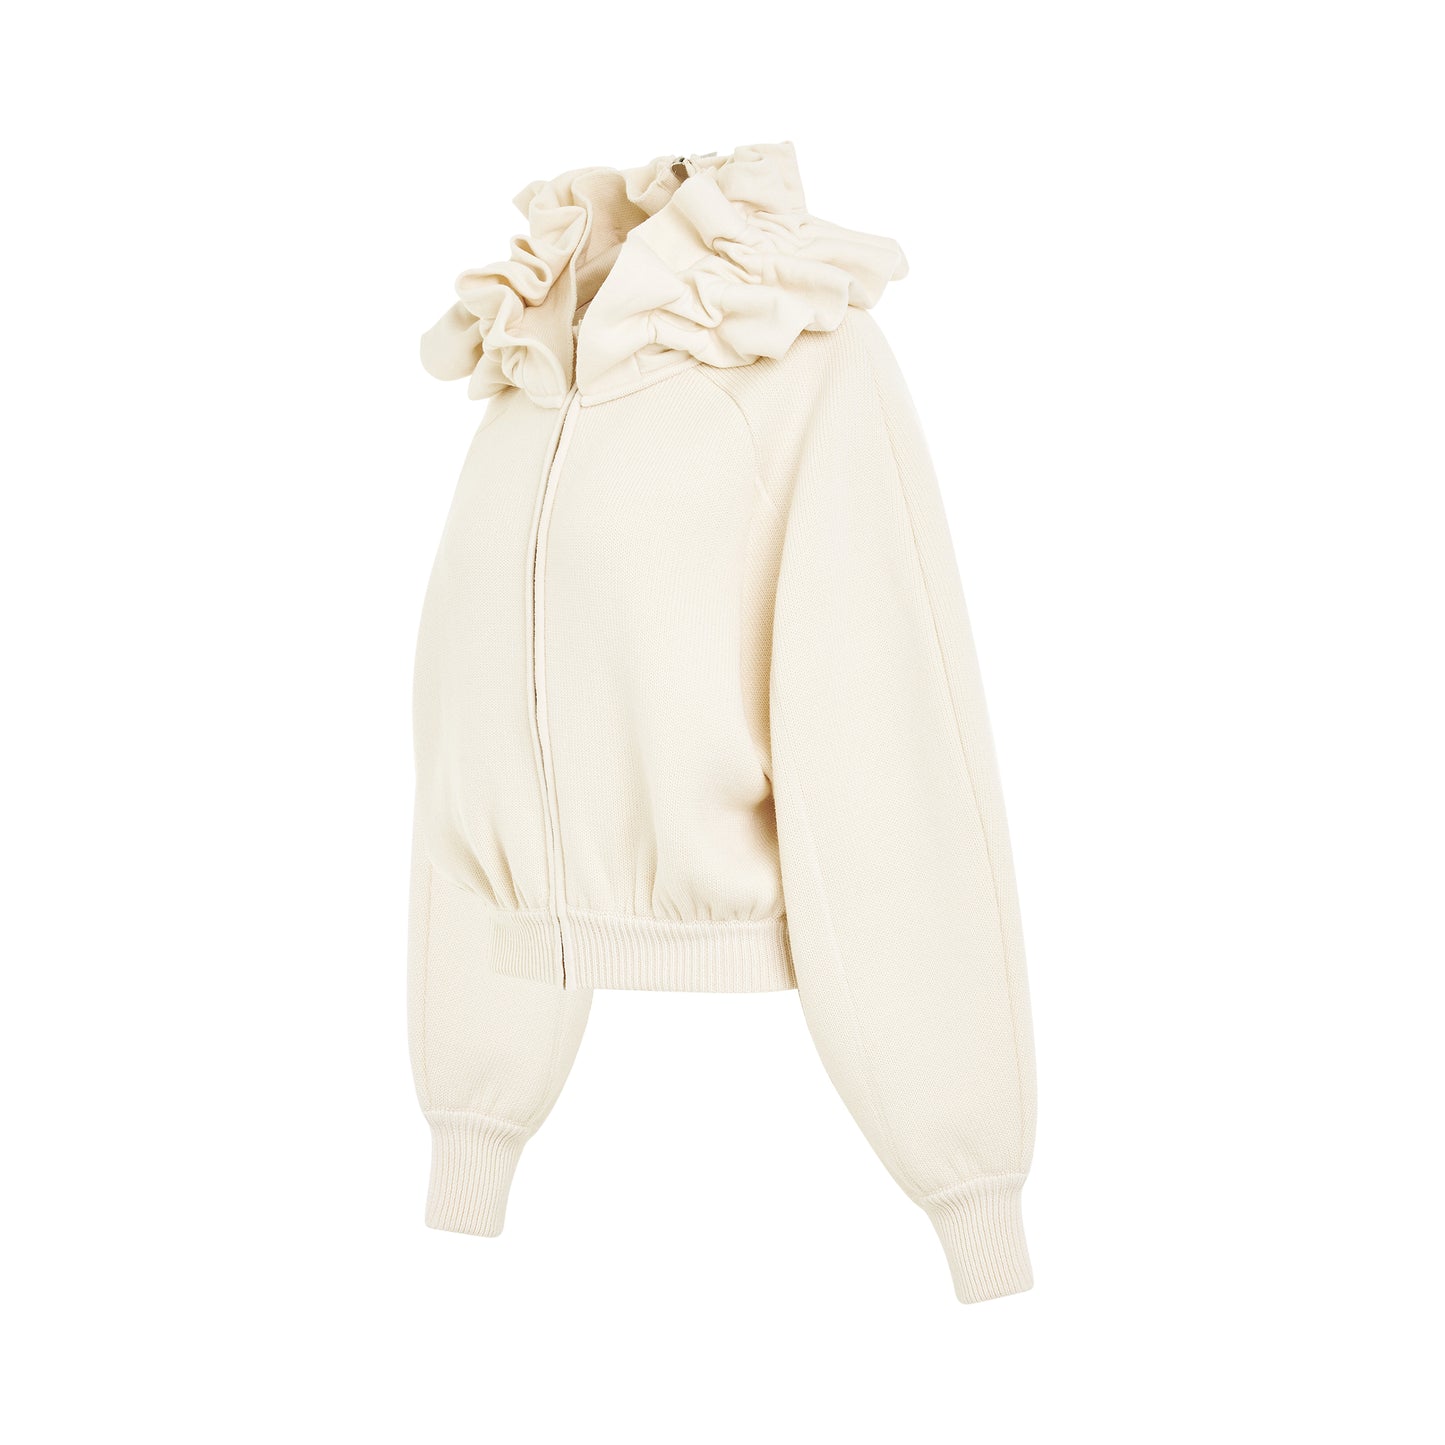 Crinoline Stiffened Knit Jacket in Off-White